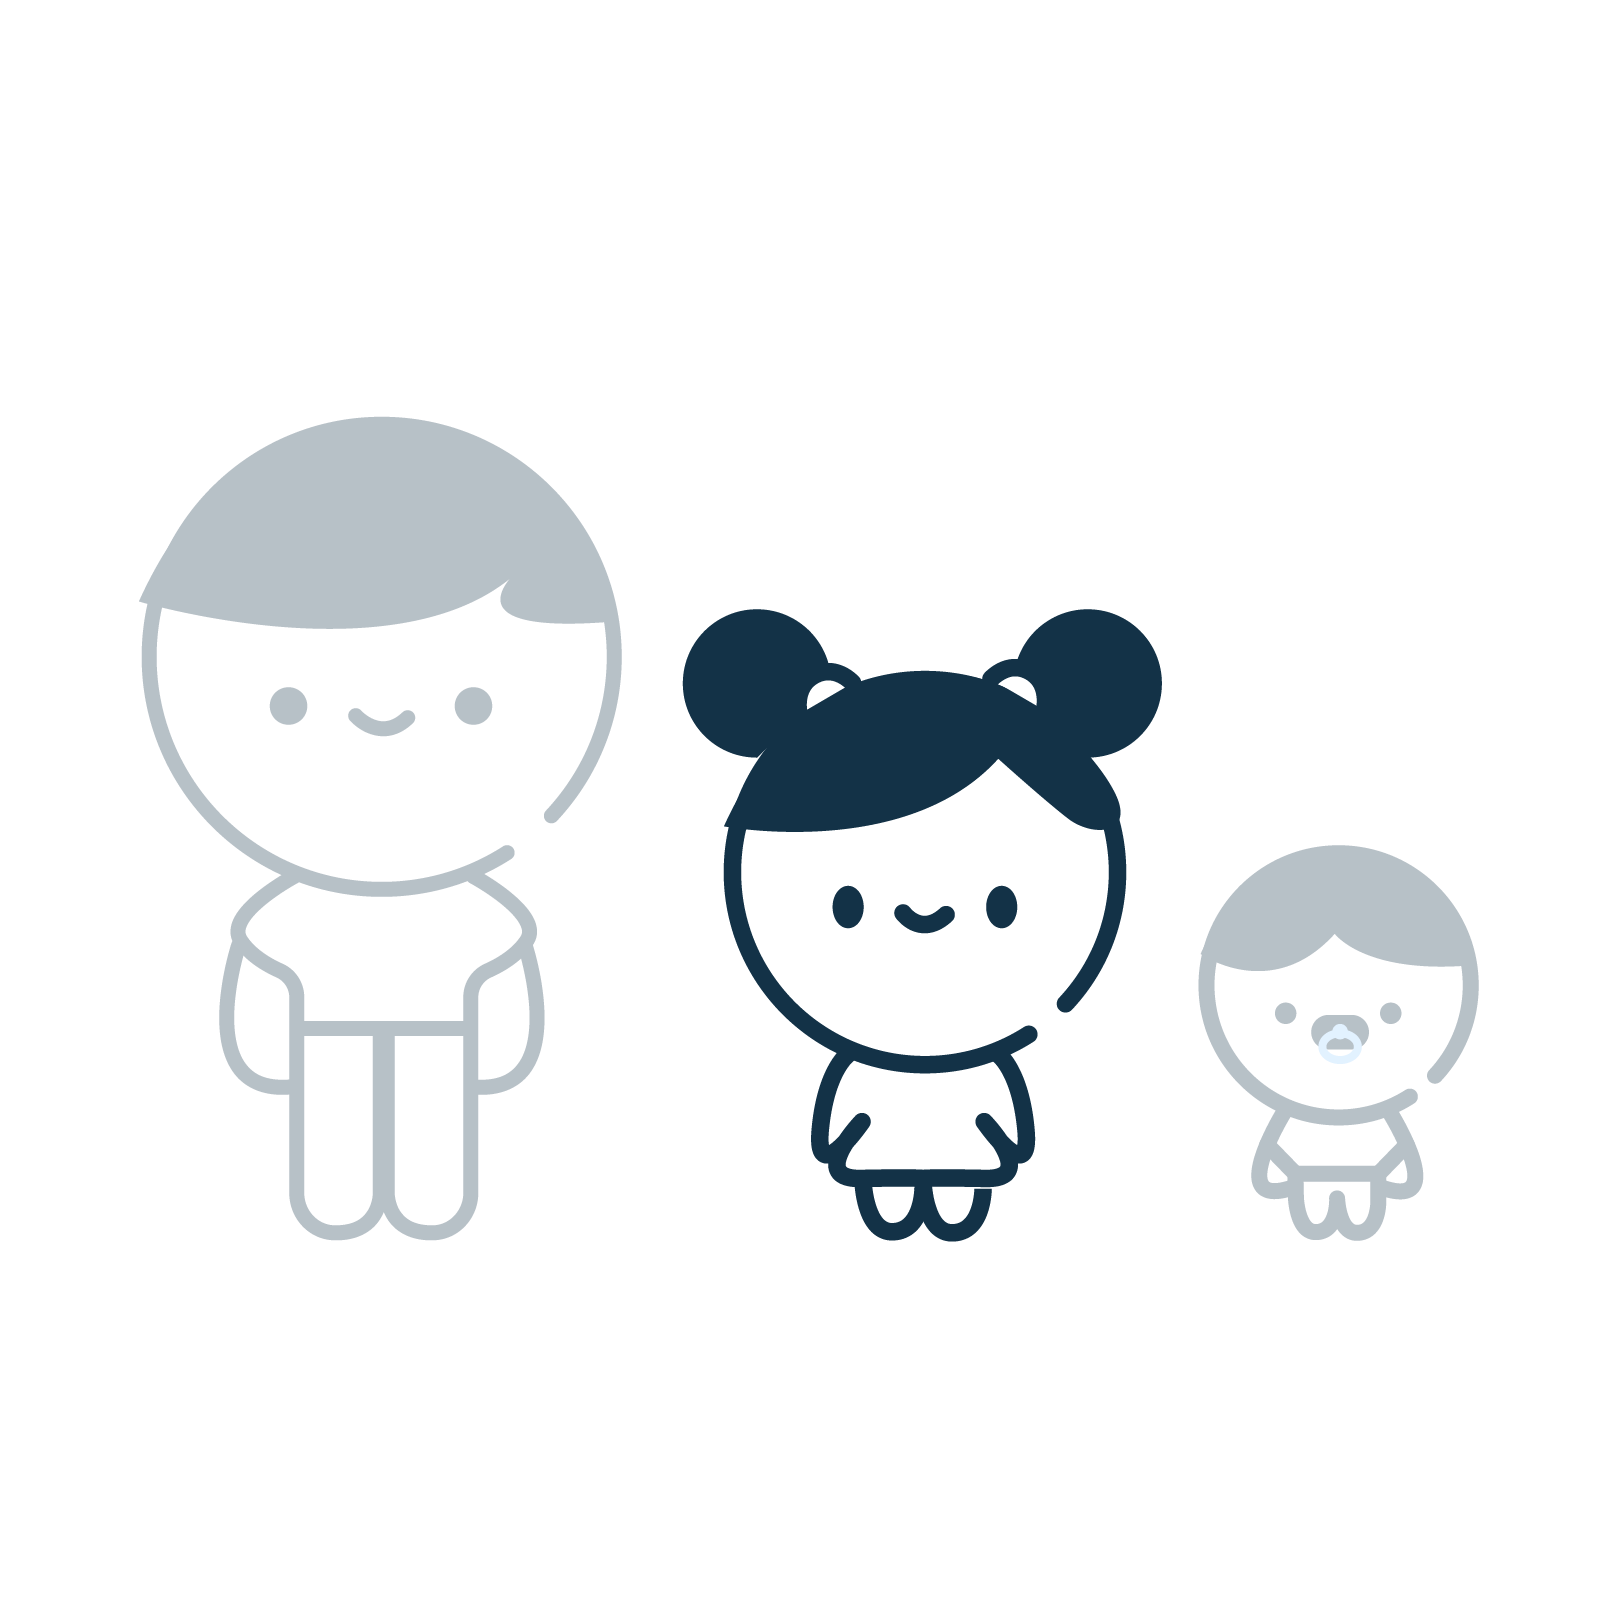 icone représentant un adulte, un enfant et un bébé, l'adulte et le bébé sont grisé, l'enfant est couleur bleu nuit